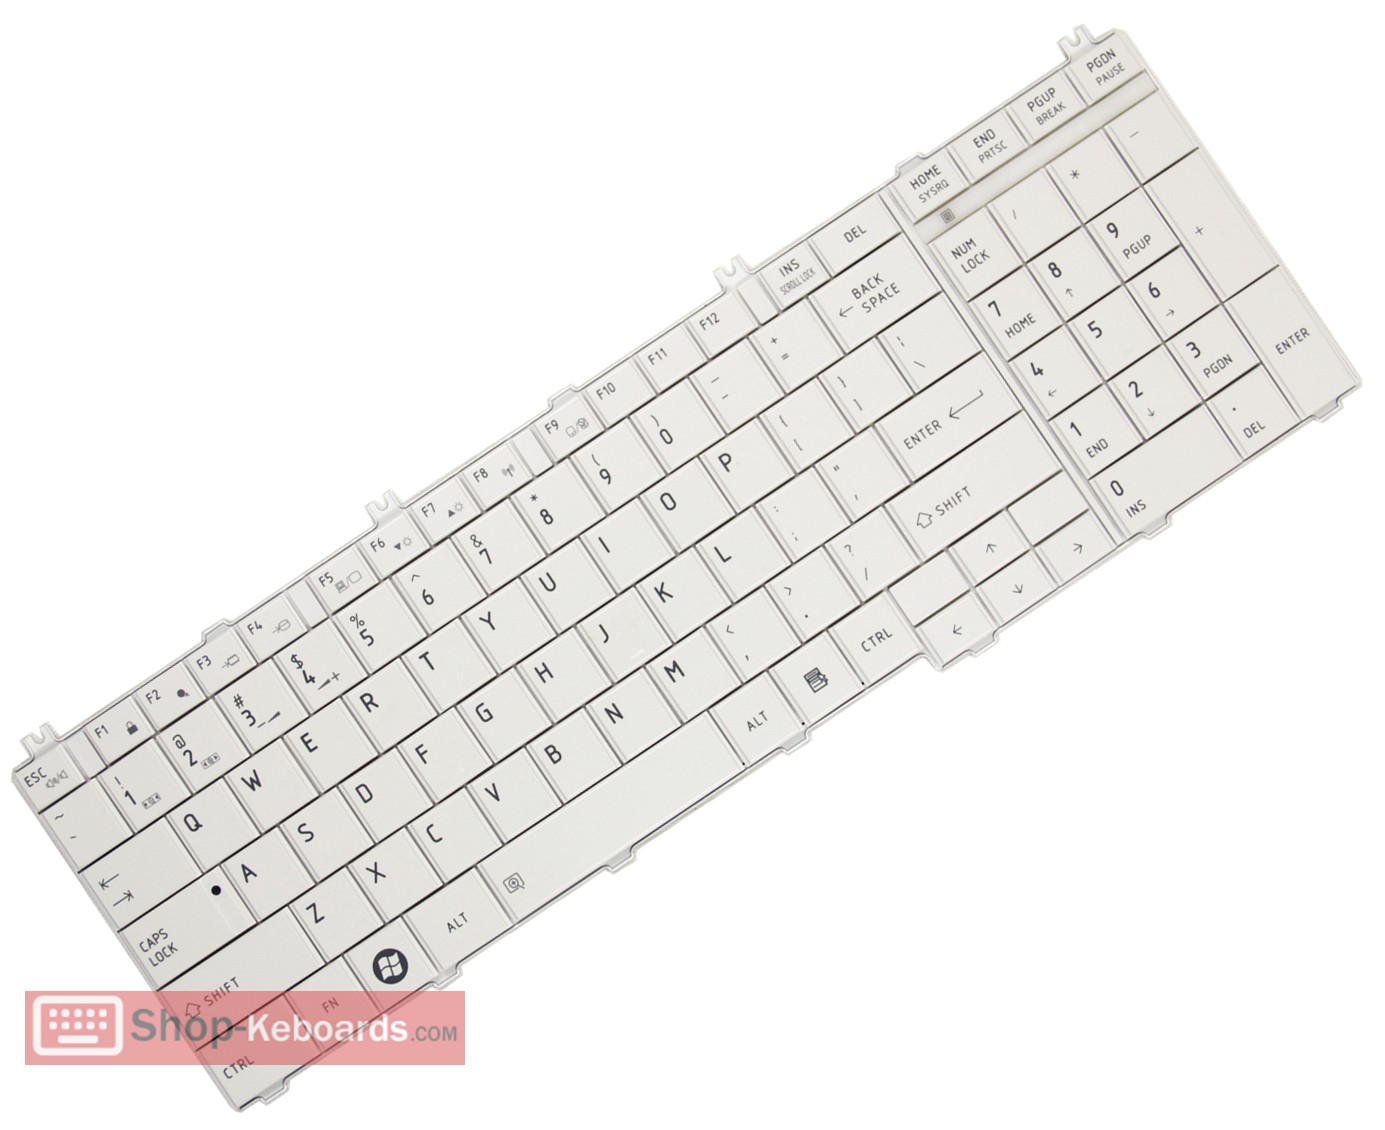 Toshiba Satellite C655 Series  Keyboard replacement